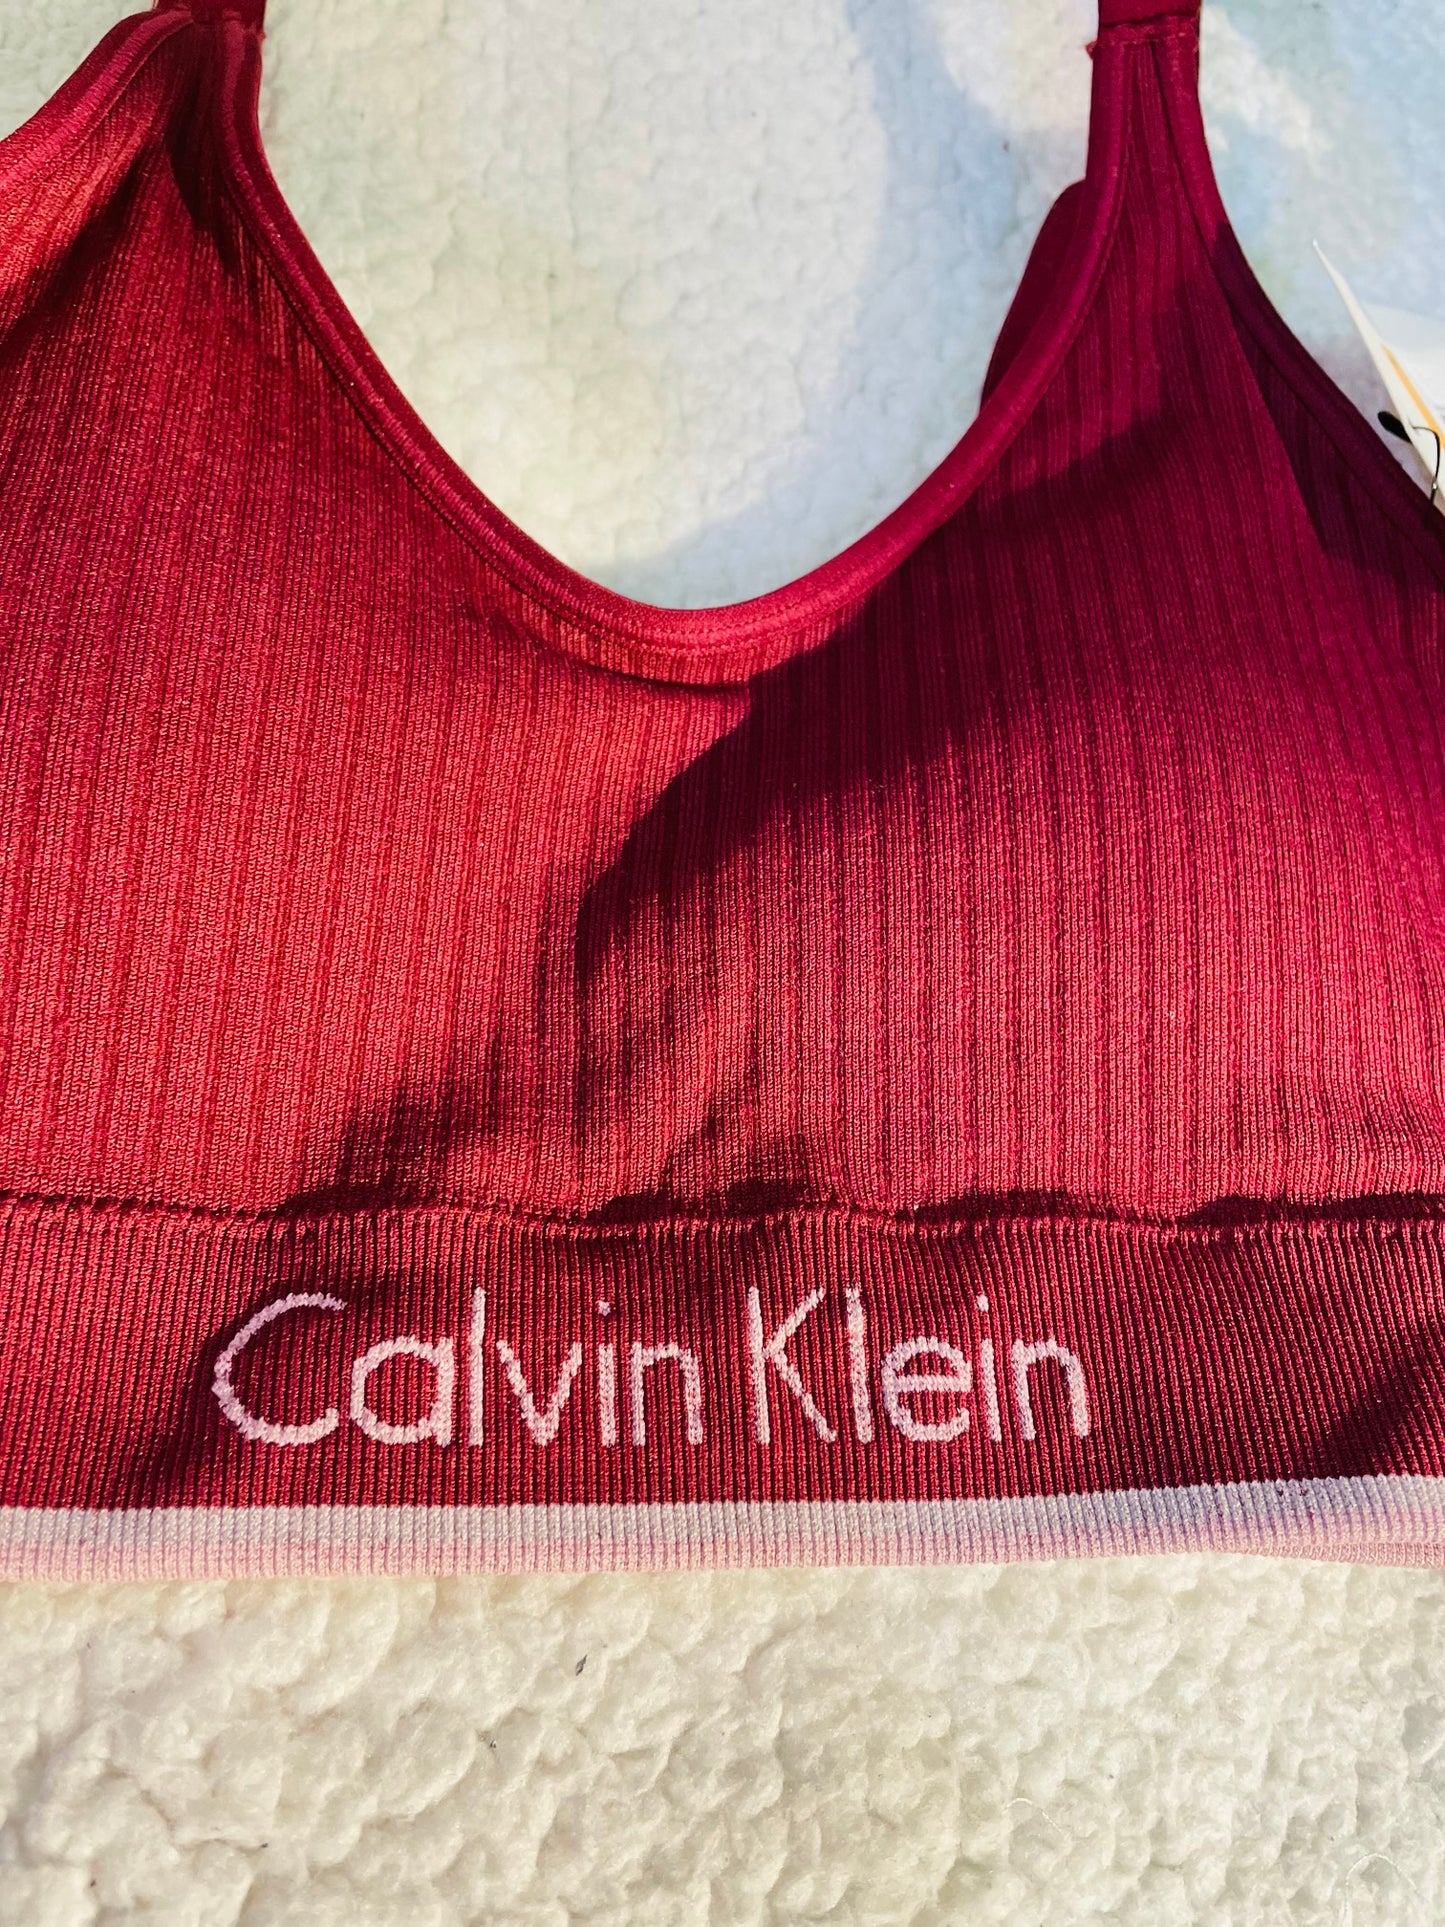 Calvin Klein bra